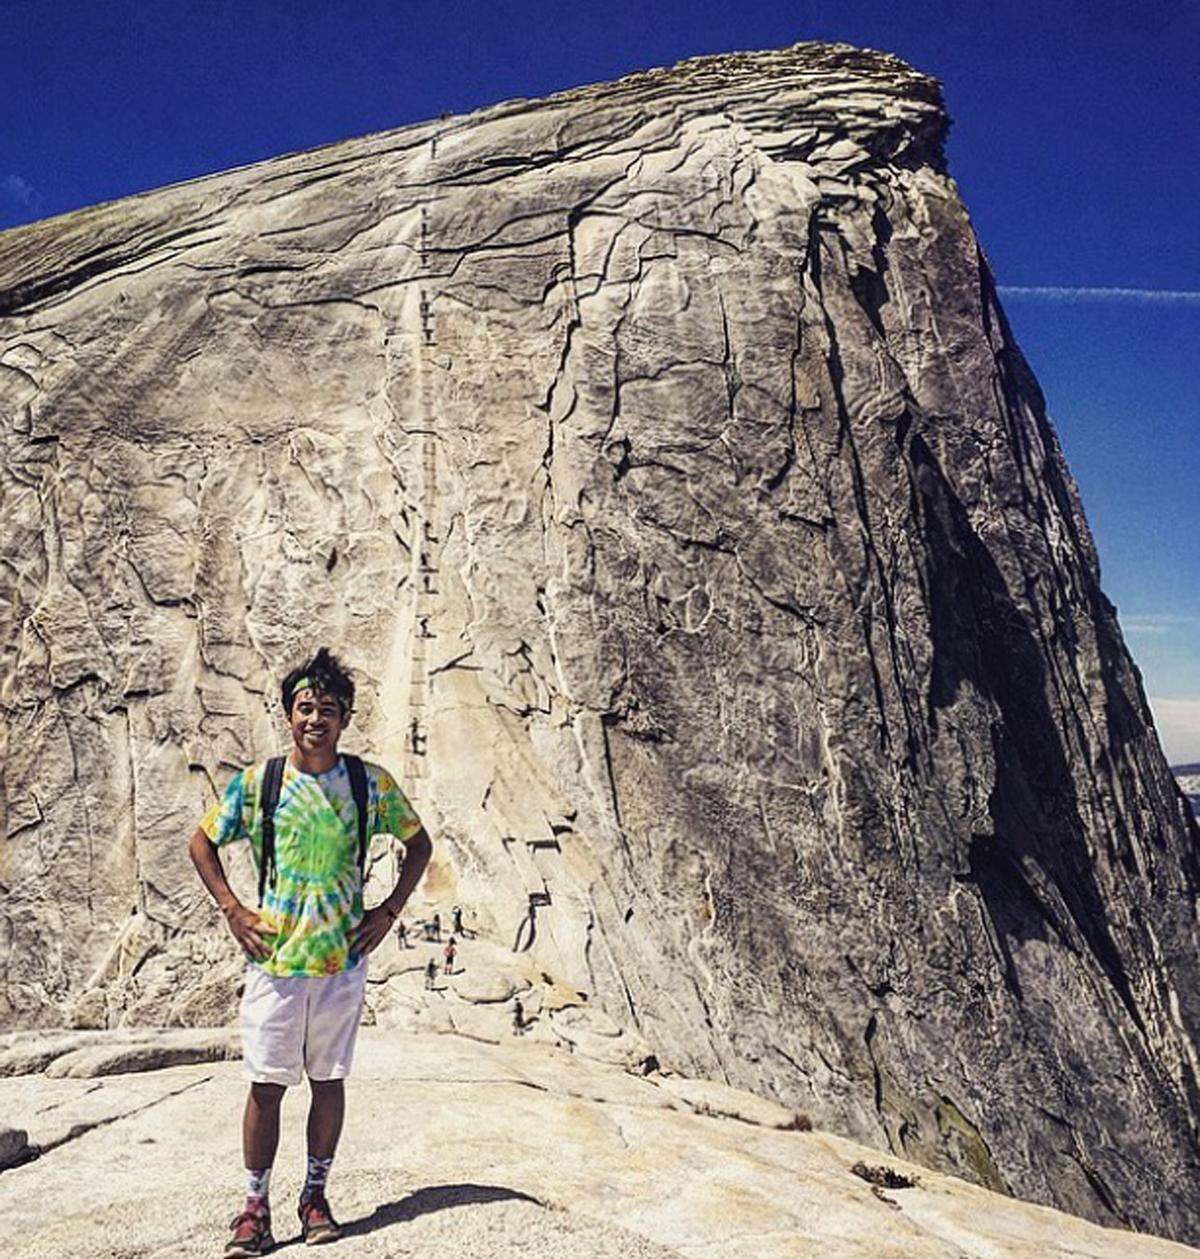 Mit über 2693 Metern ist der Half Dome der höchste Berg im Yosemite Nationalpark. Ihn zu erklimmen dauert etwa 12 Stunden. Die letzten Höhenmeter legt man mittels Stufen zurück. Und diese haben es in sich.